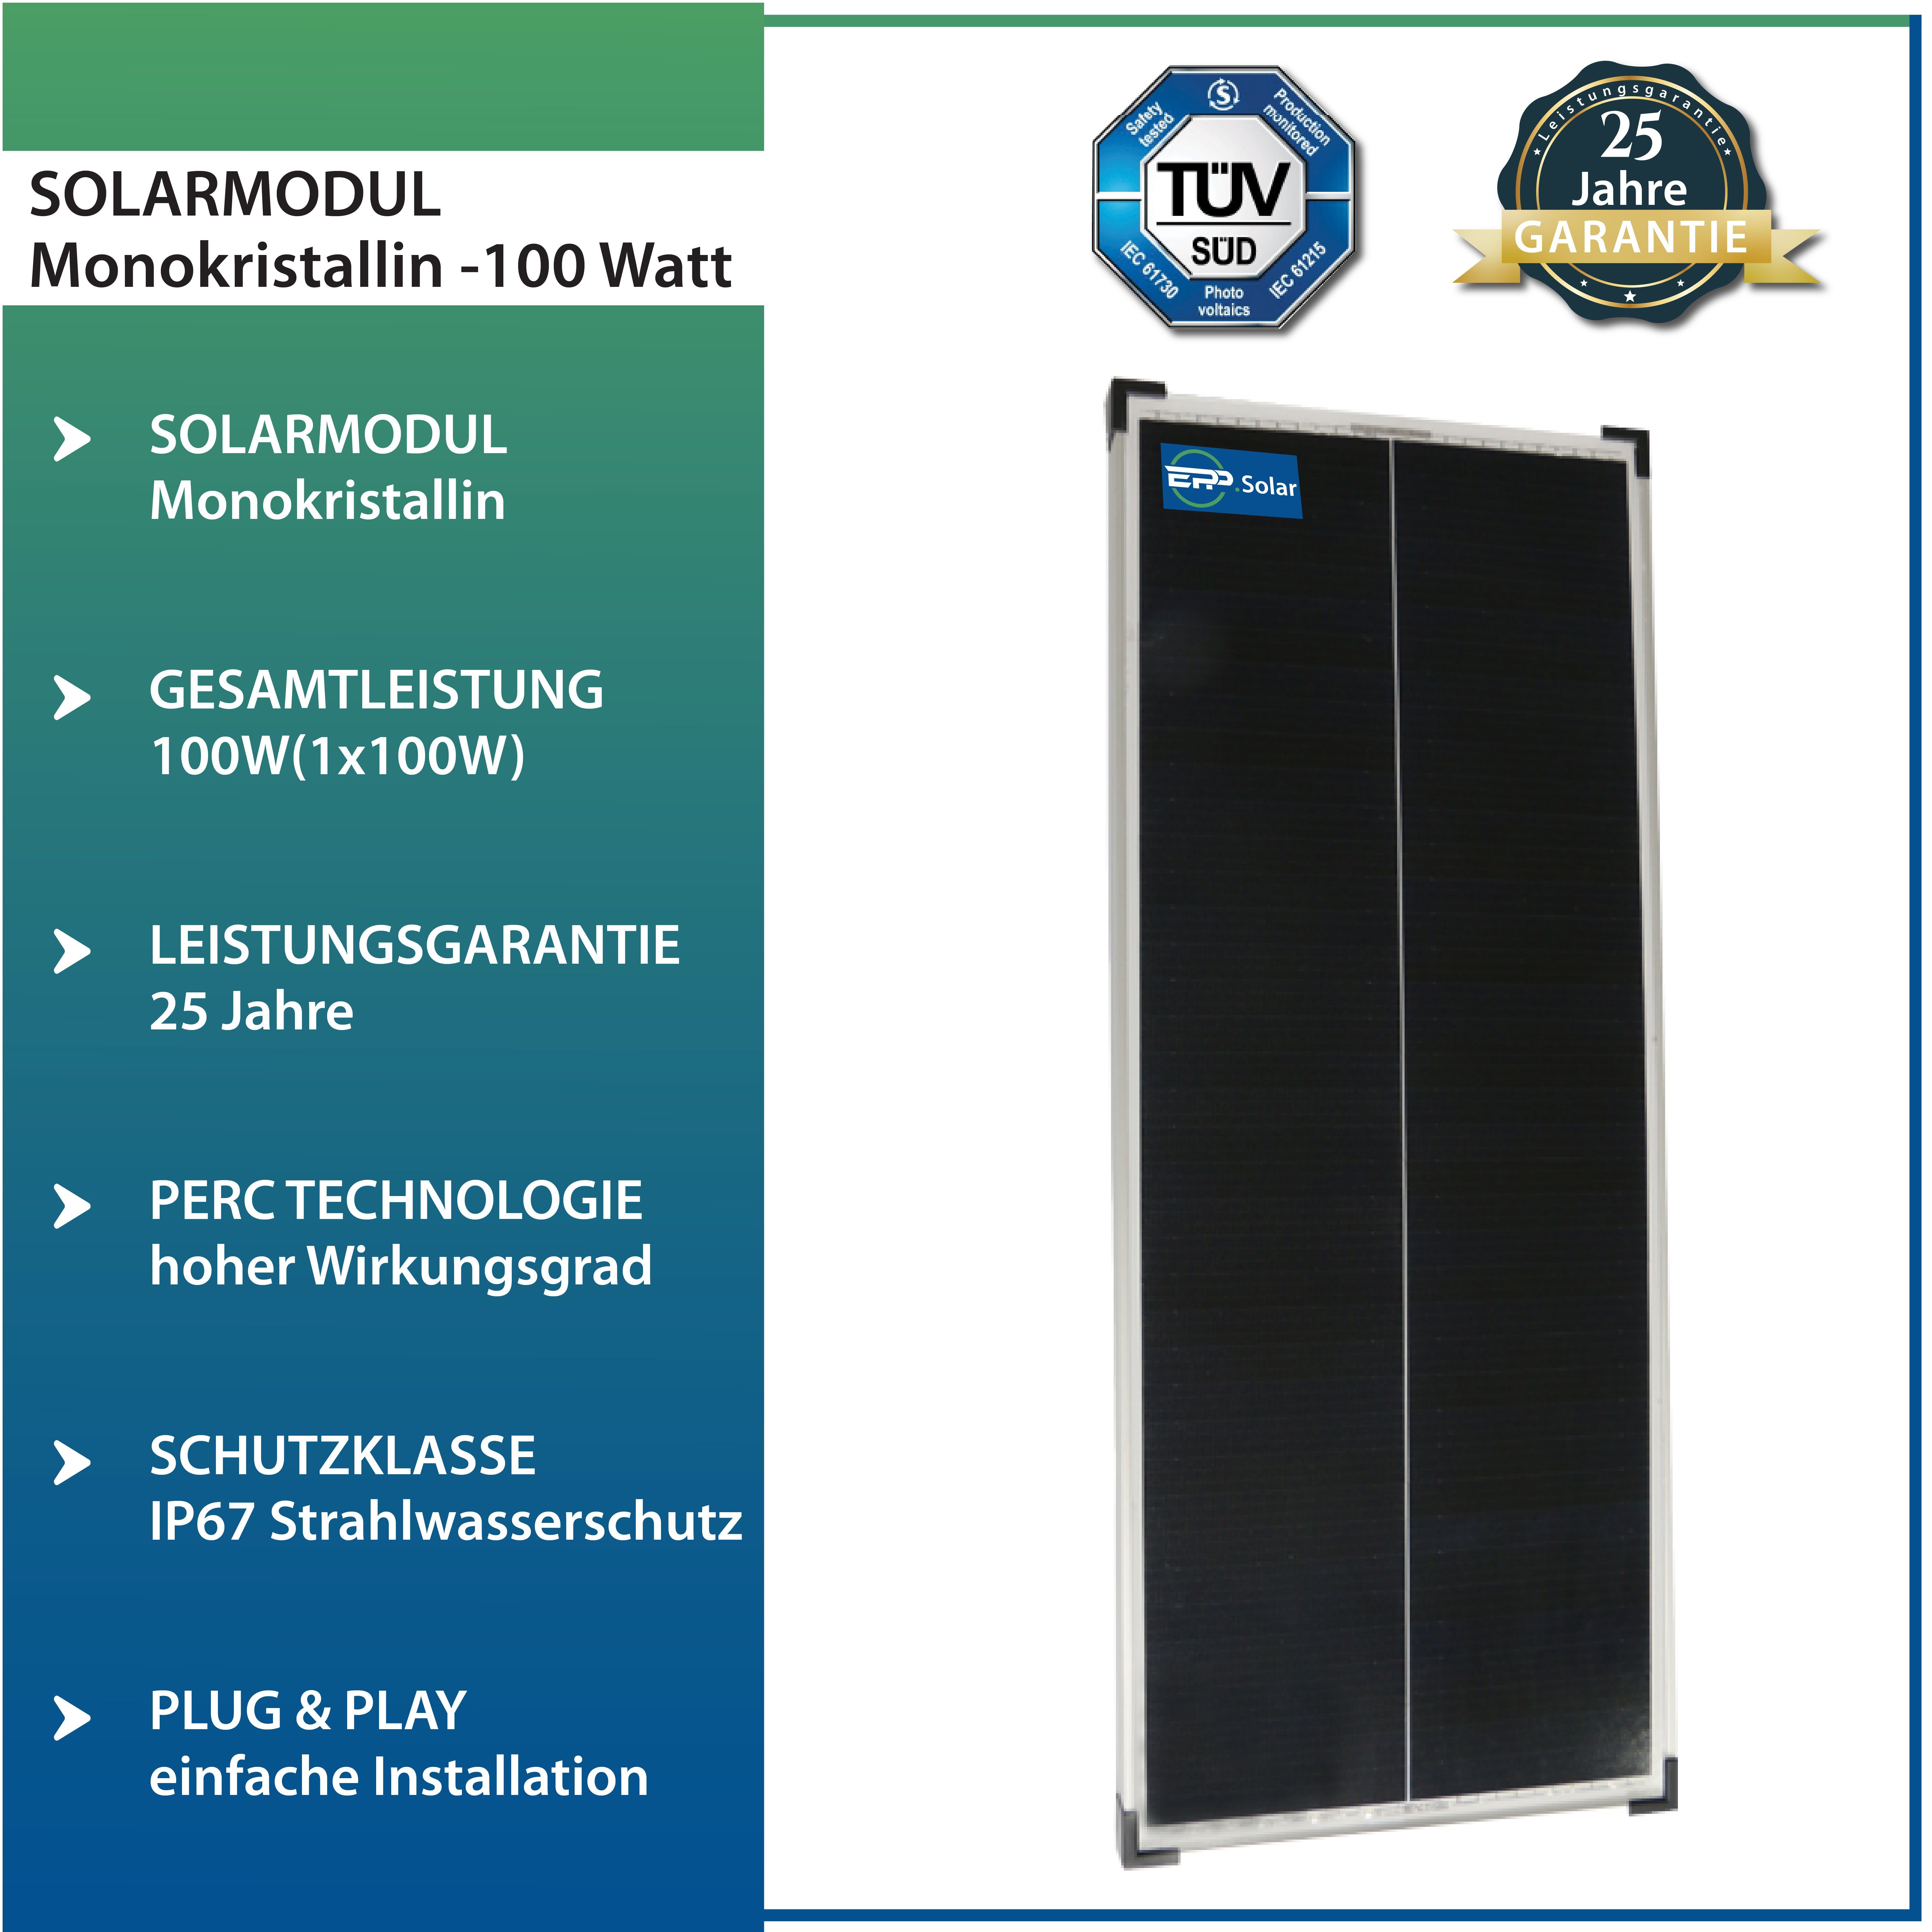 Campergold Solaranlage 5X100W Camper, für & Solarmodul Mono Wohnwagen Wohnmobile Silber-46